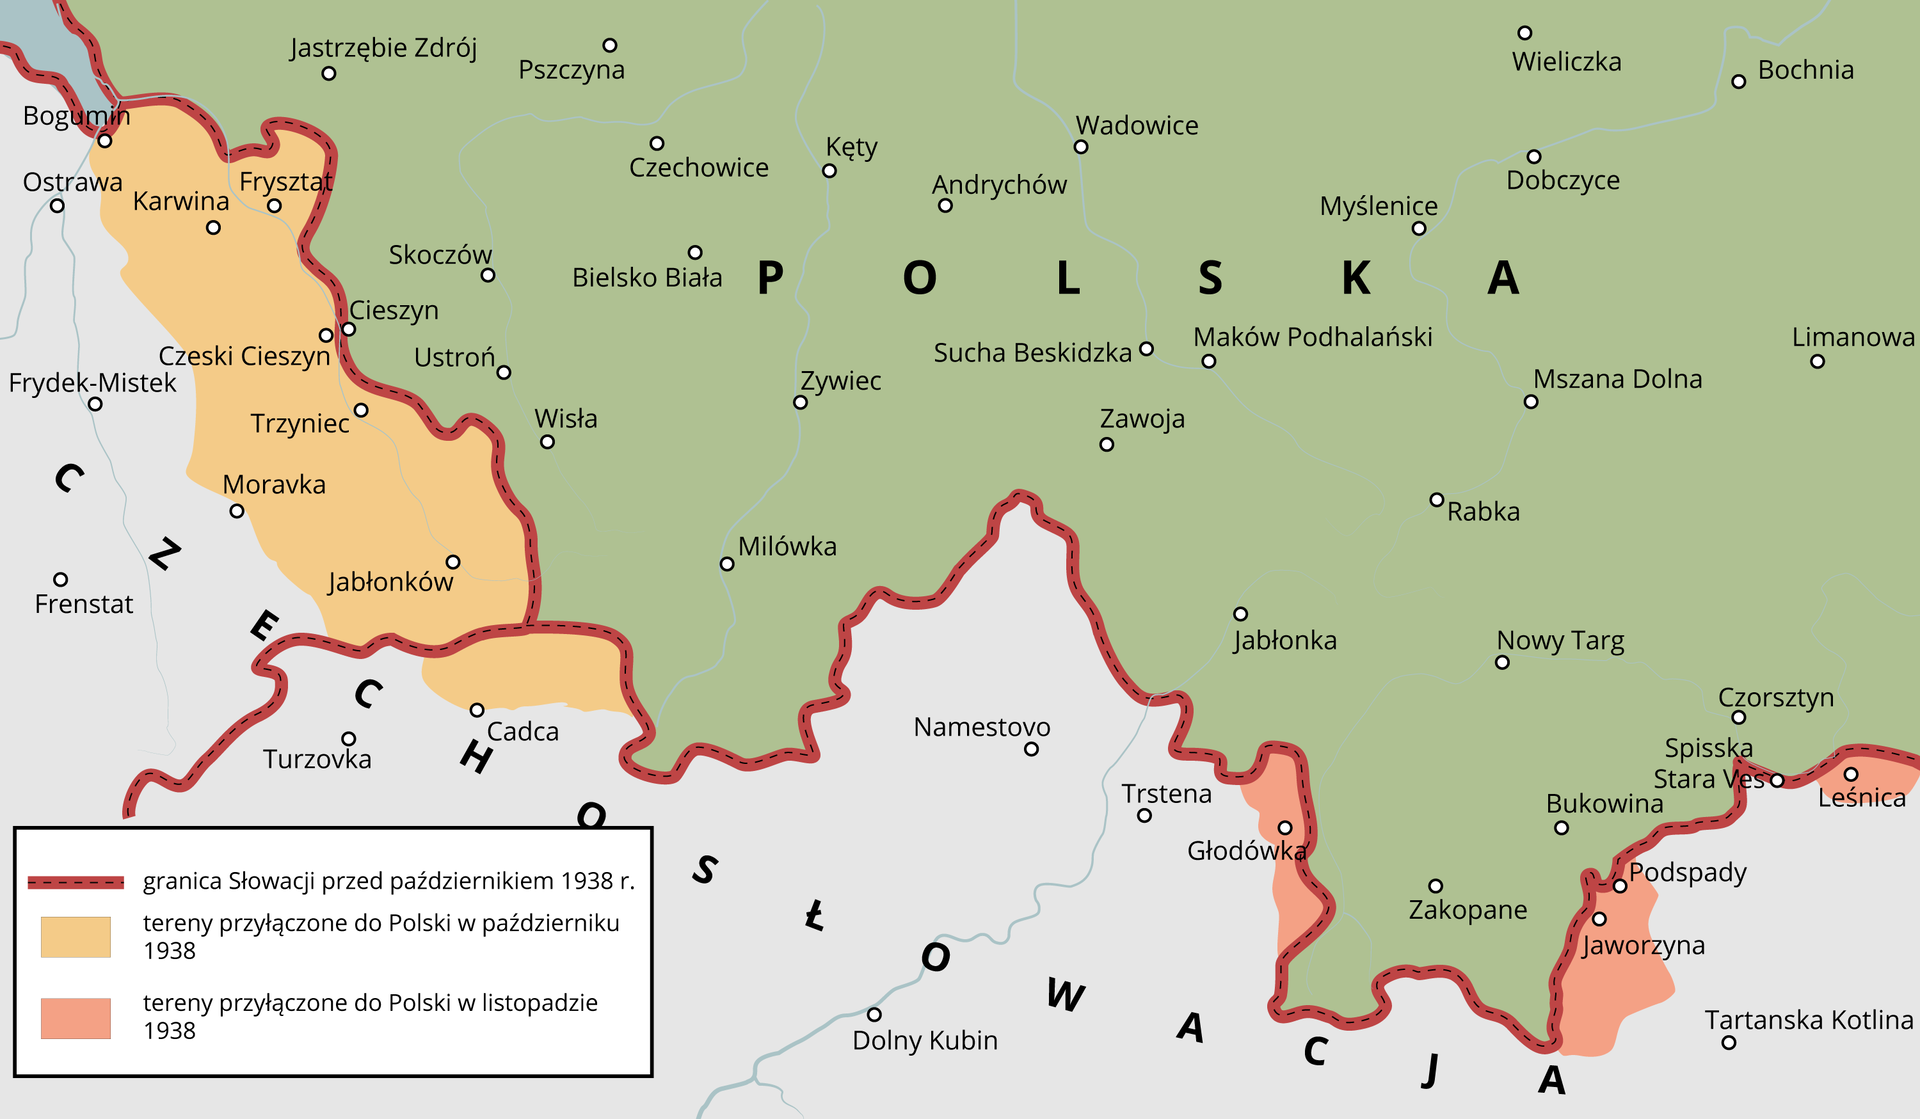 Ilustracja przedstawia mapę. Są na niej zaznaczone następujące kraje: Polska i Czechosłowacja. Zaznaczona jest granic Słowacji przed październikiem 1938 r. Zaznaczone są tereny Czech przy granicy z Polską, które zostały przyłączone do Polski w październiku 1938. Obejmują miasta: Czeski Cieszyn, Trzyniec, Karwina, Frysztat, Jabłonków. Zaznaczone są trzy miejsca na terenie Słowacji przy granicy z Polską, które zostały przyłączone do Polski w 1938 roku. Obejmuję następujące miasta: Głodówka, Jaworzyna, Podspady, Leśnica.